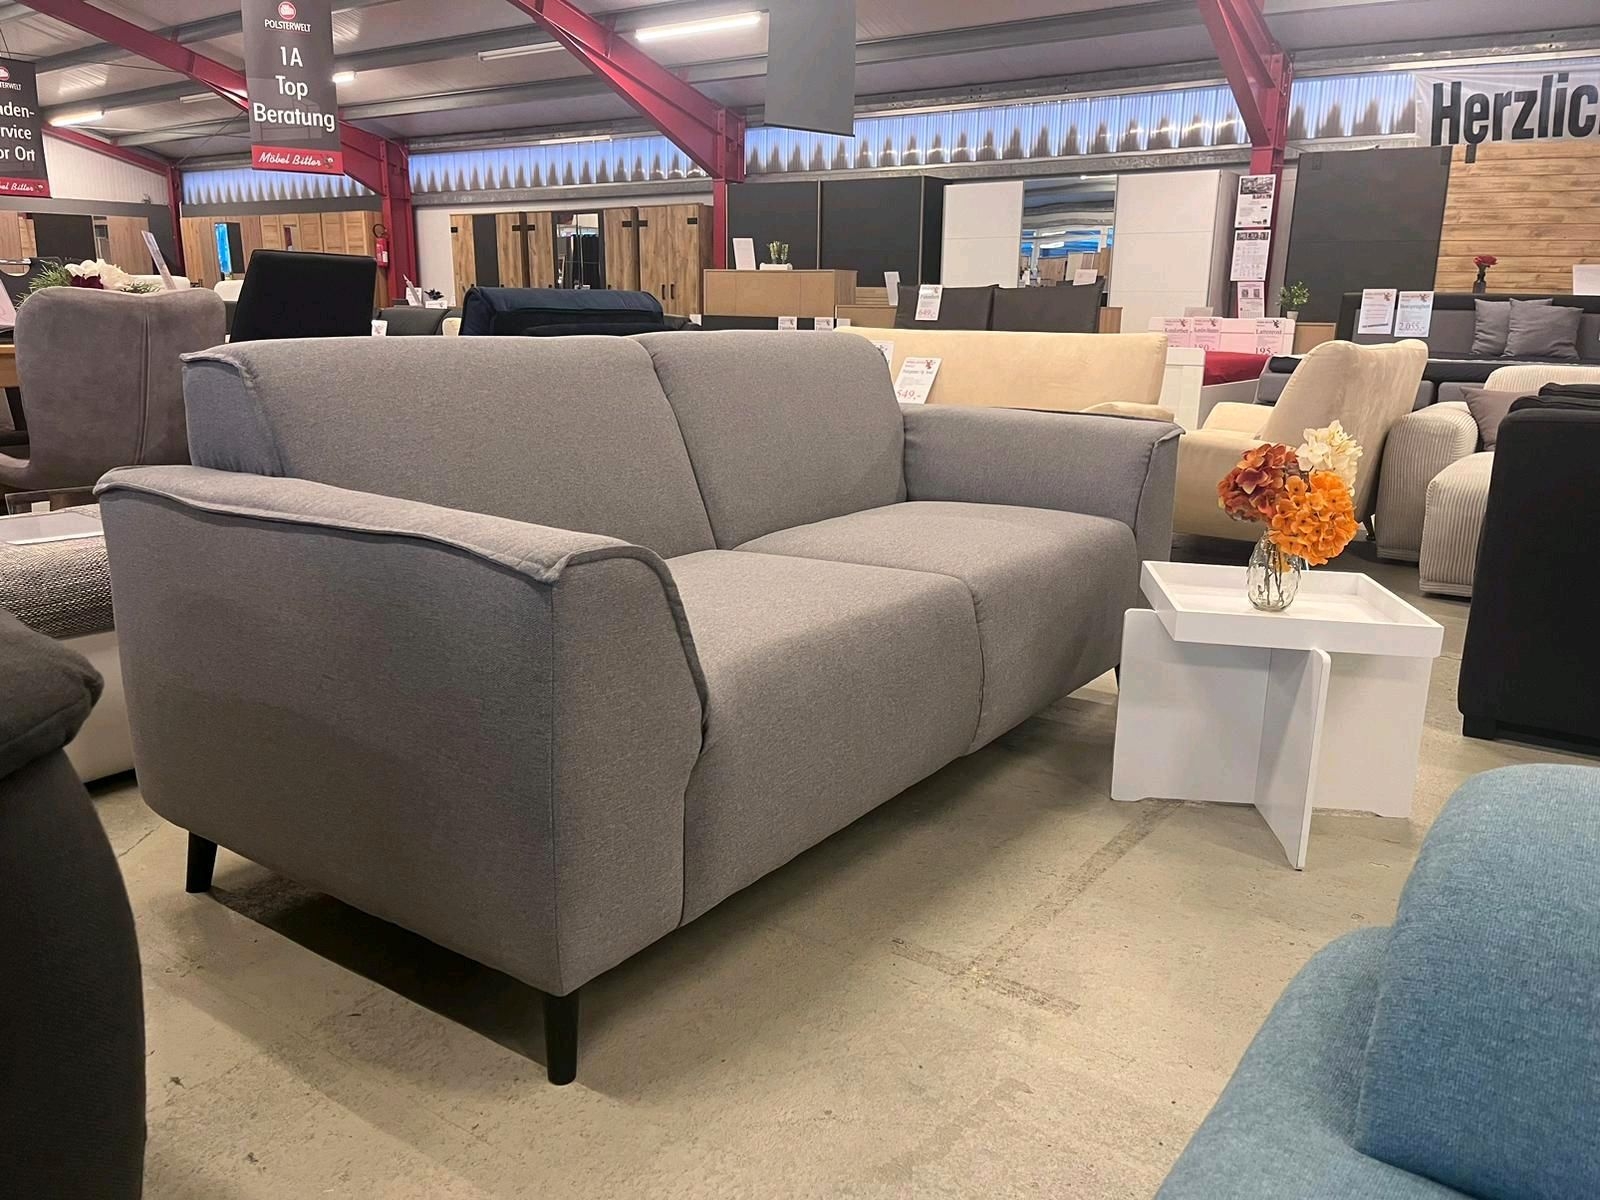 2,5er Sofa 2,5er Couch JANEK Strukturstoff Grau in Scandic Style Versand Beverungen